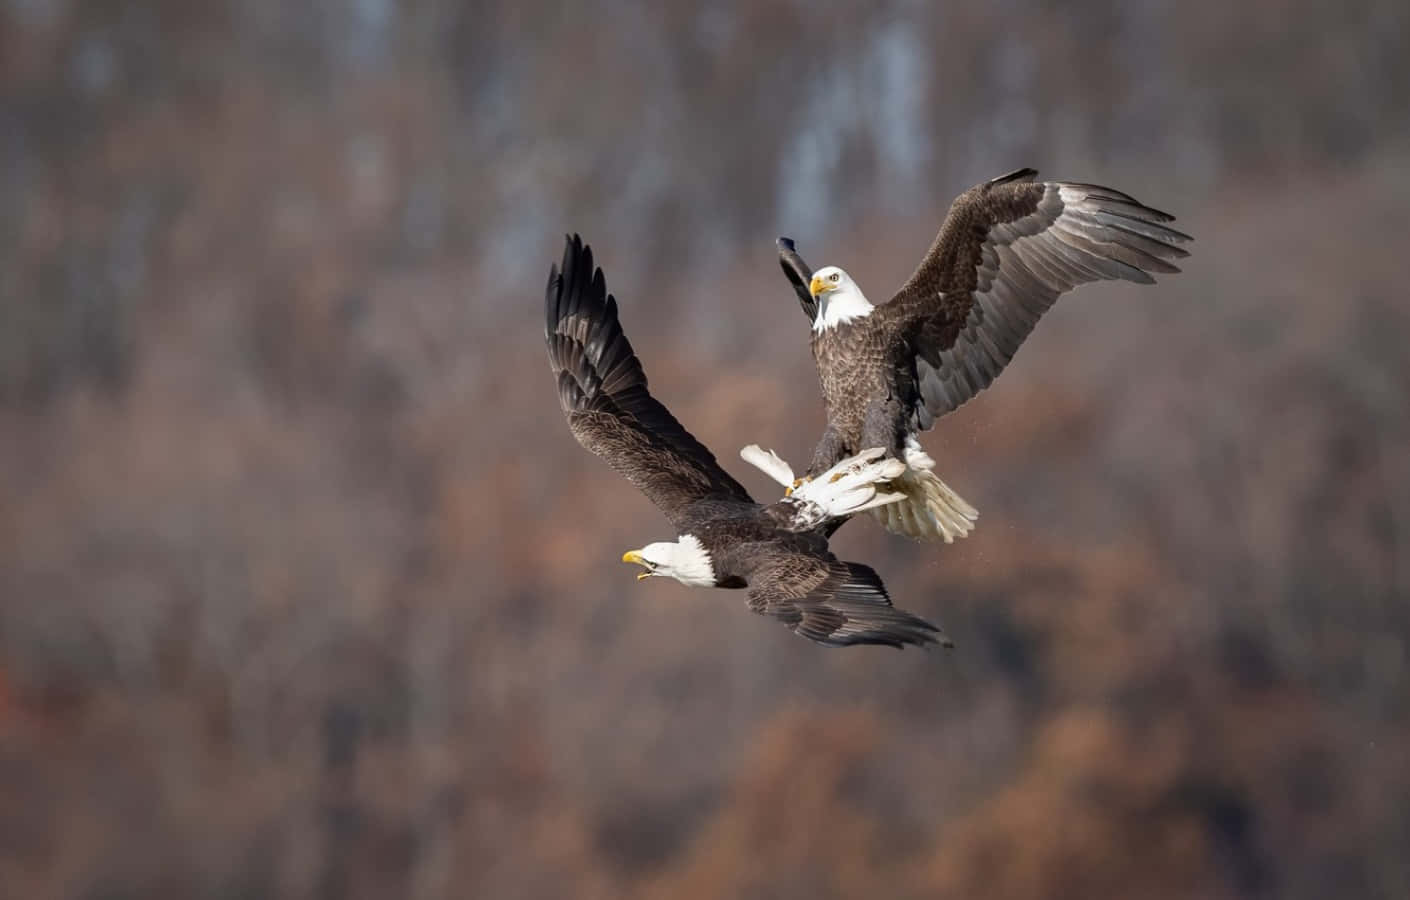 Zweikahle Adler Fliegen In Der Luft.